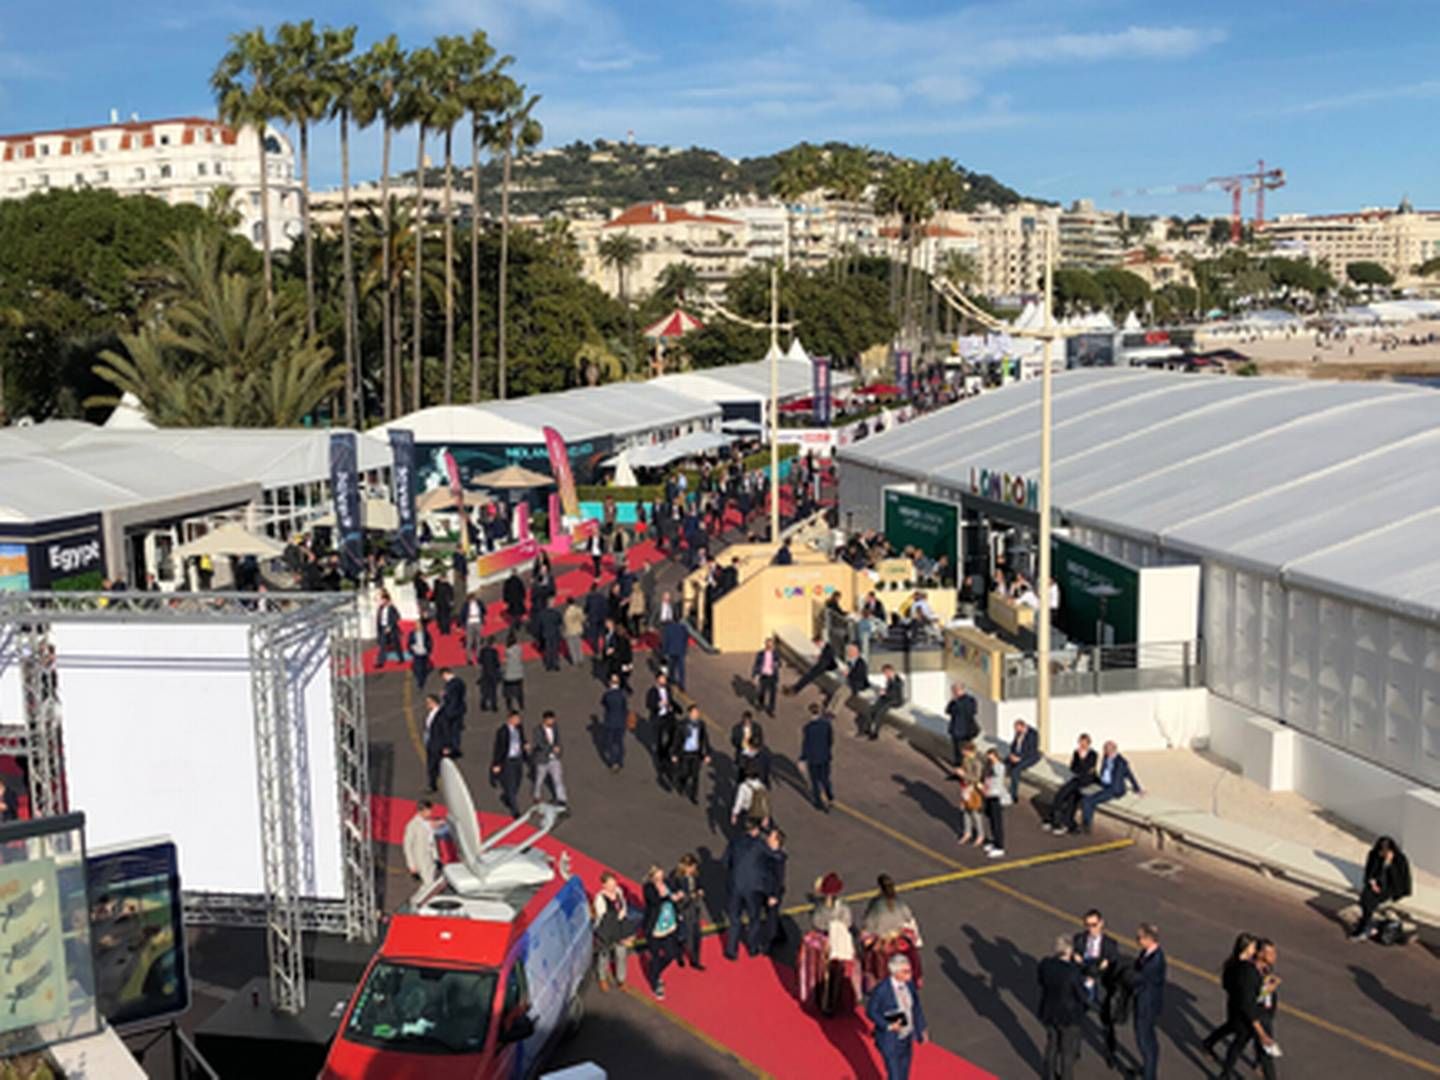 Antallet af deltagere til årets ejendomsmesse i Cannes, Mipim, vokser stødt. | Foto: Andreas Vestergaard